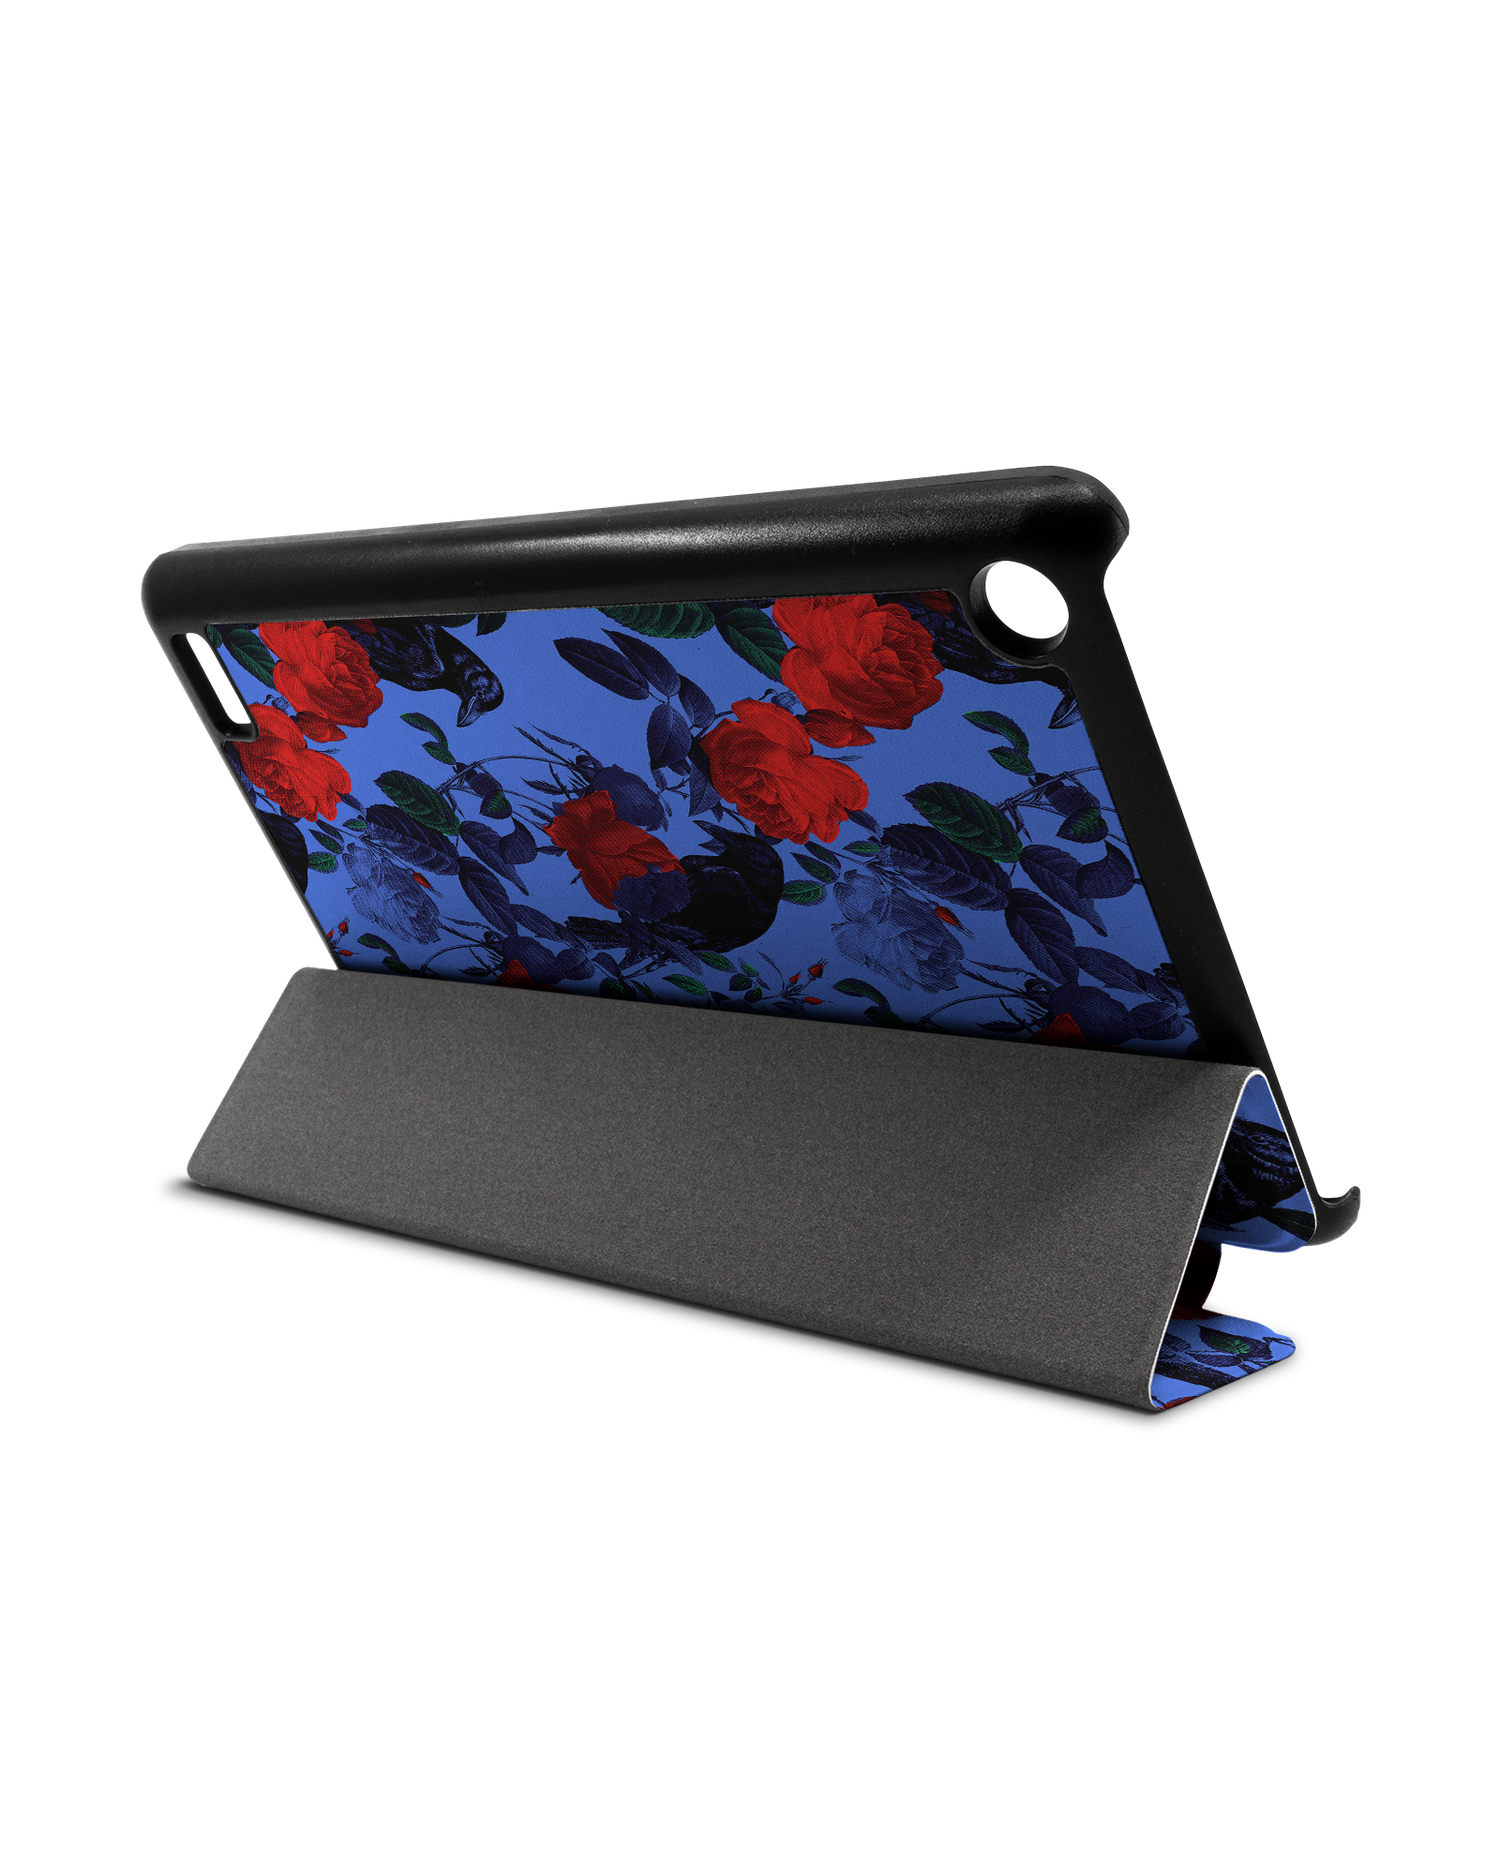 Roses And Ravens Tablet Smart Case für Amazon Fire 7: Aufgestellt im Querformat